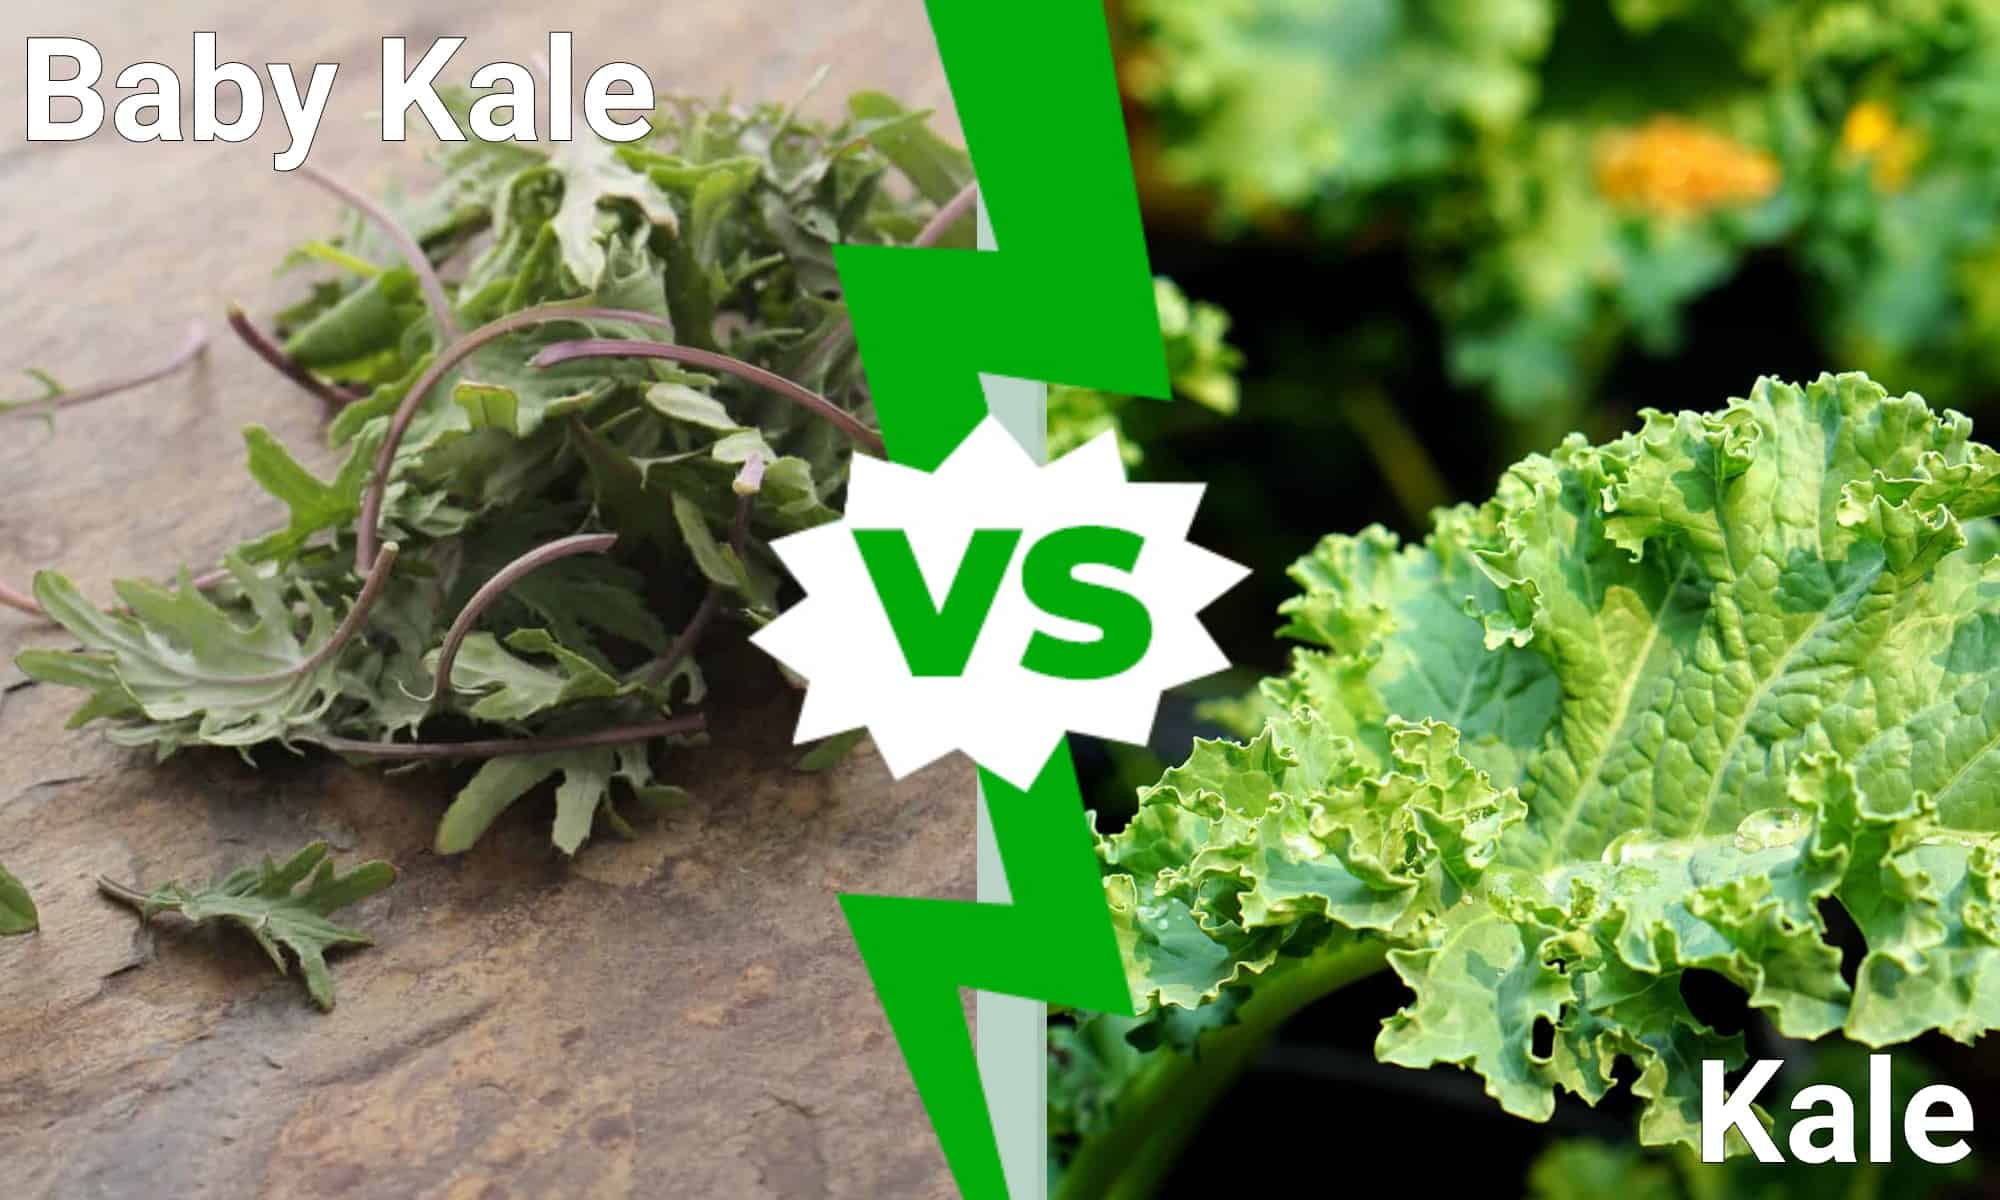 Baby Kale vs Kale